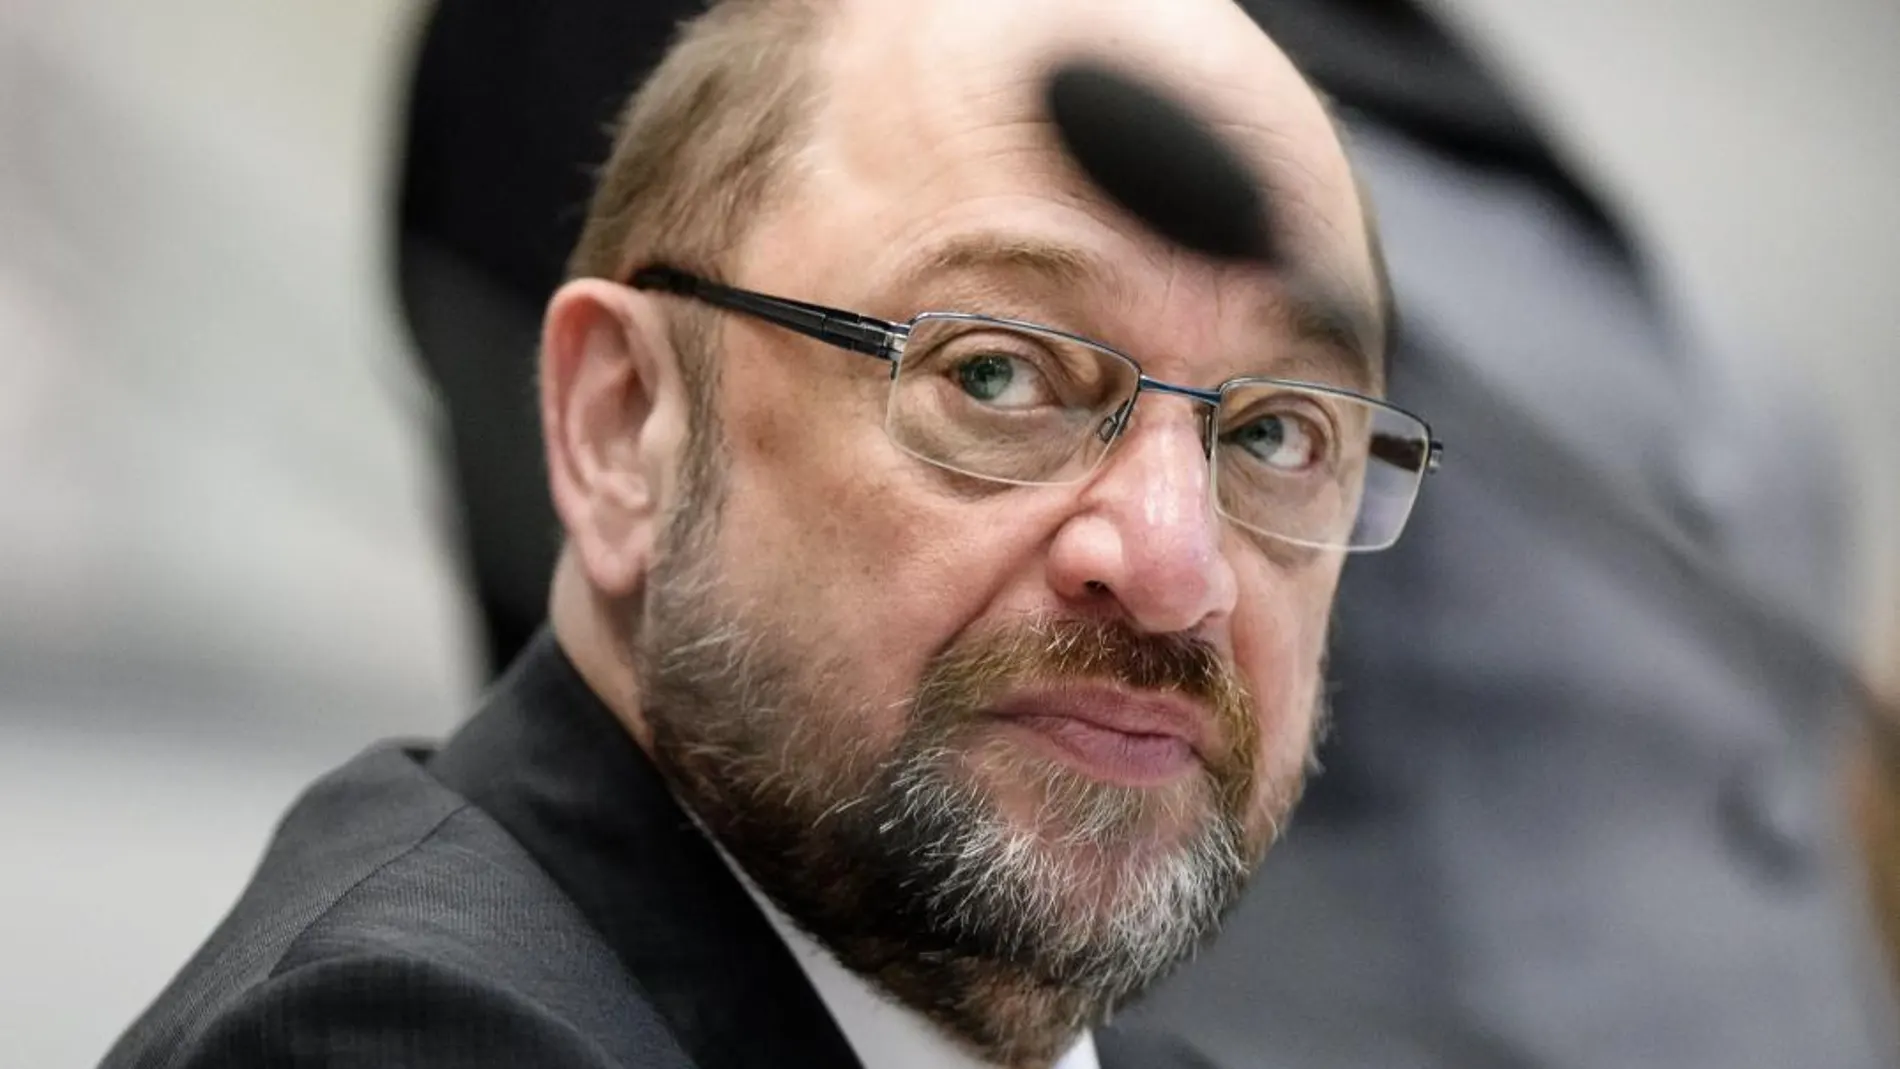 El líder del Partido Socialdemócrata (SPD) alemán, Martin Schulz, asiste a una reunión del grupo parlamentario de su partido en Berlín (Alemania), hoy